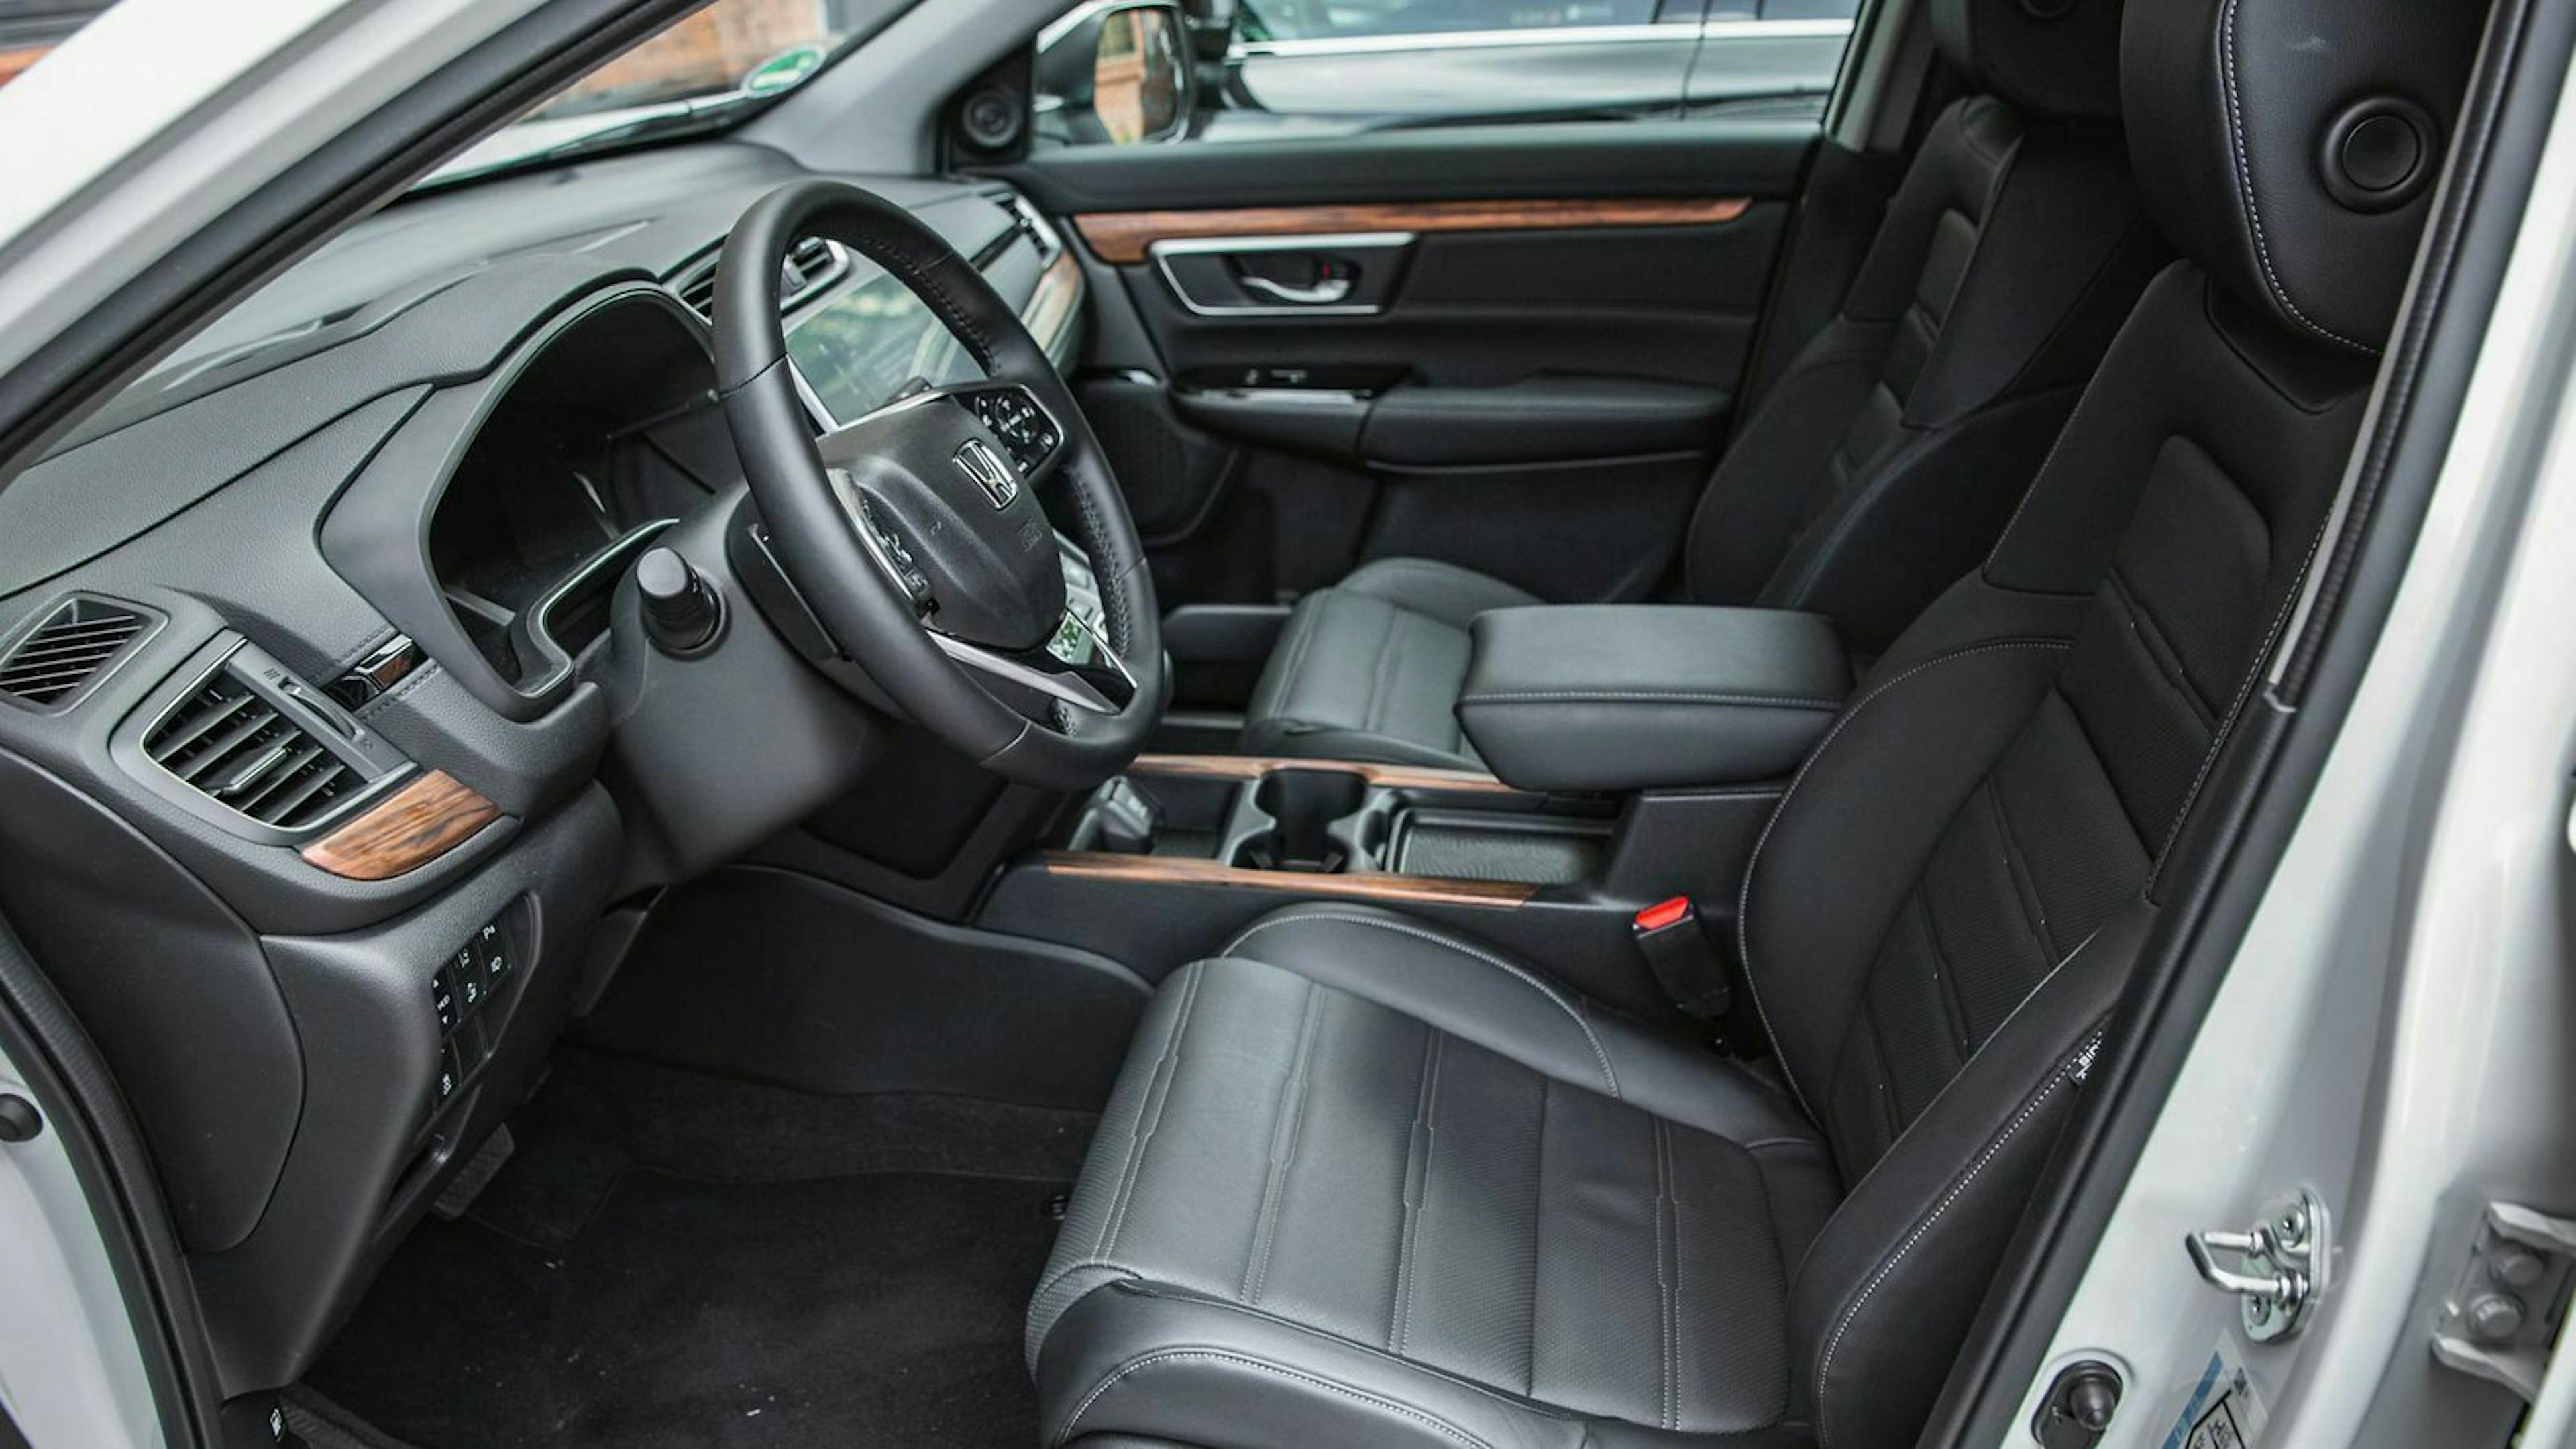 Der Innenraum des Hondas wirkt im vergleich zum Lexus bieder